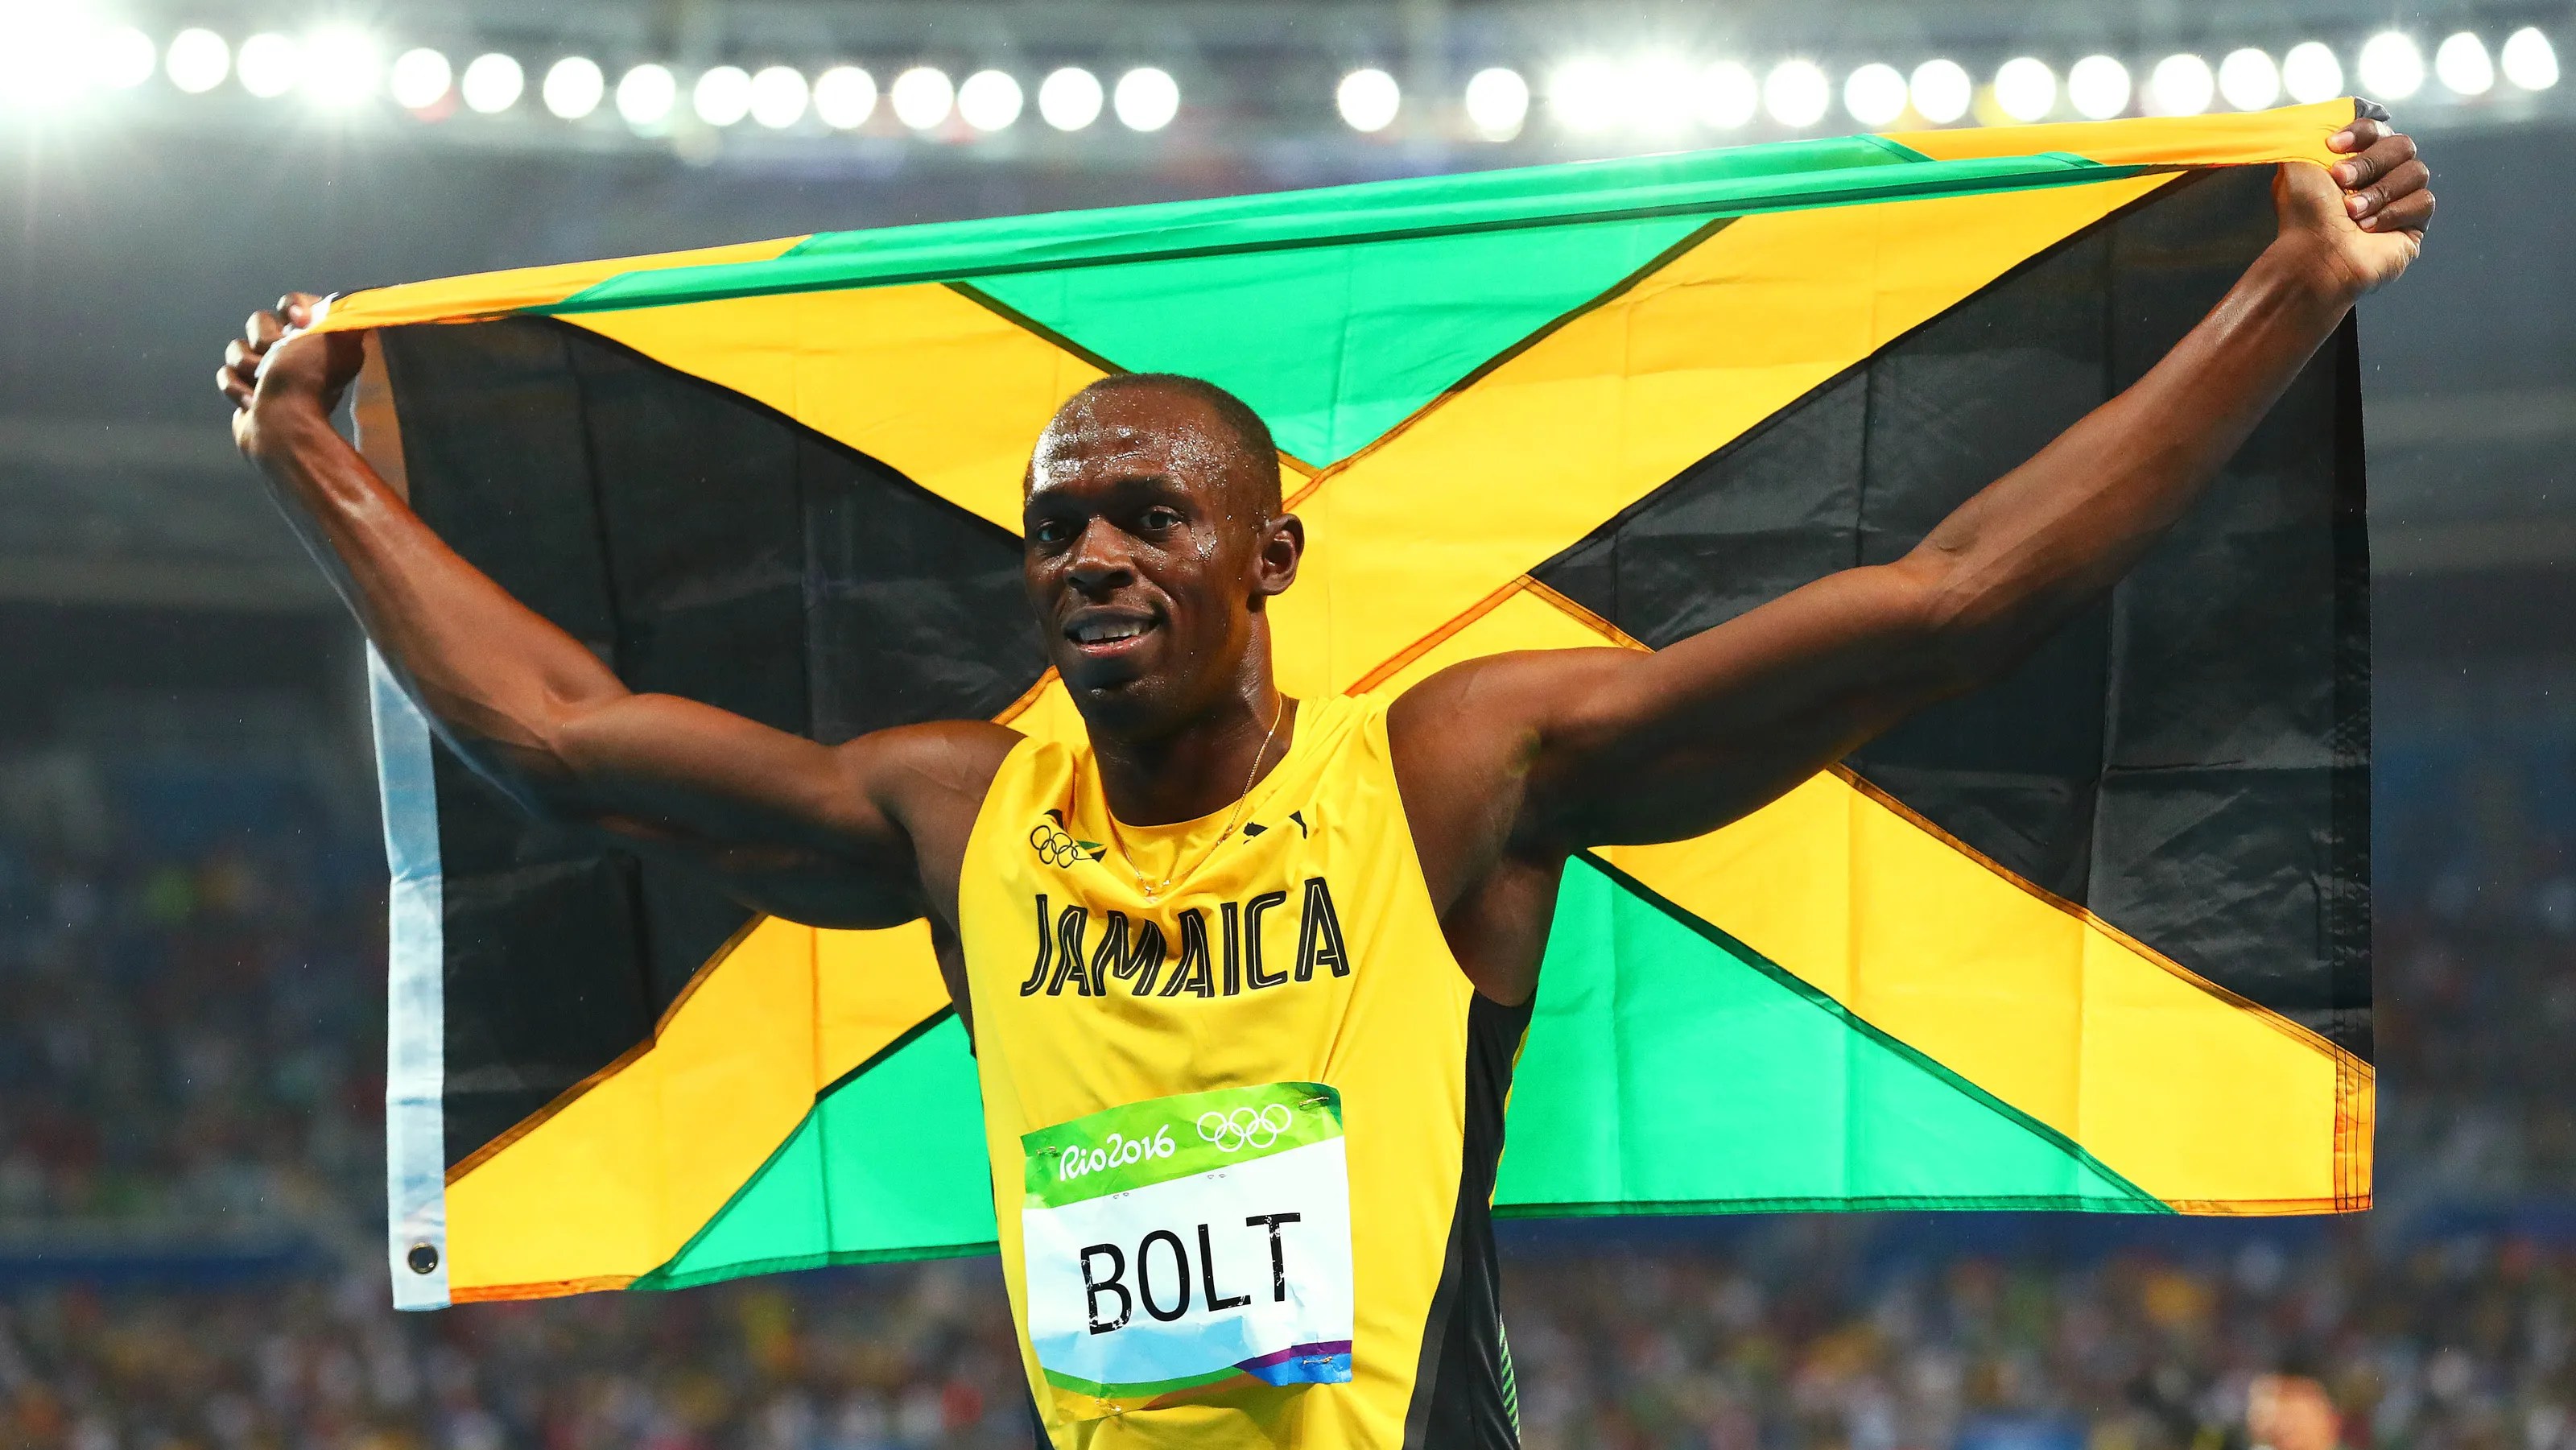 Baut Usain RUSAK?  Bolt kehilangan seluruh dana pensiunnya sebesar $12 juta, tersisa hanya 12.000, LIHAT BAGAIMANA?  Penipuan Usain Bolt, UANG BOLT USAIN, USAIN BOLT JAMAICA